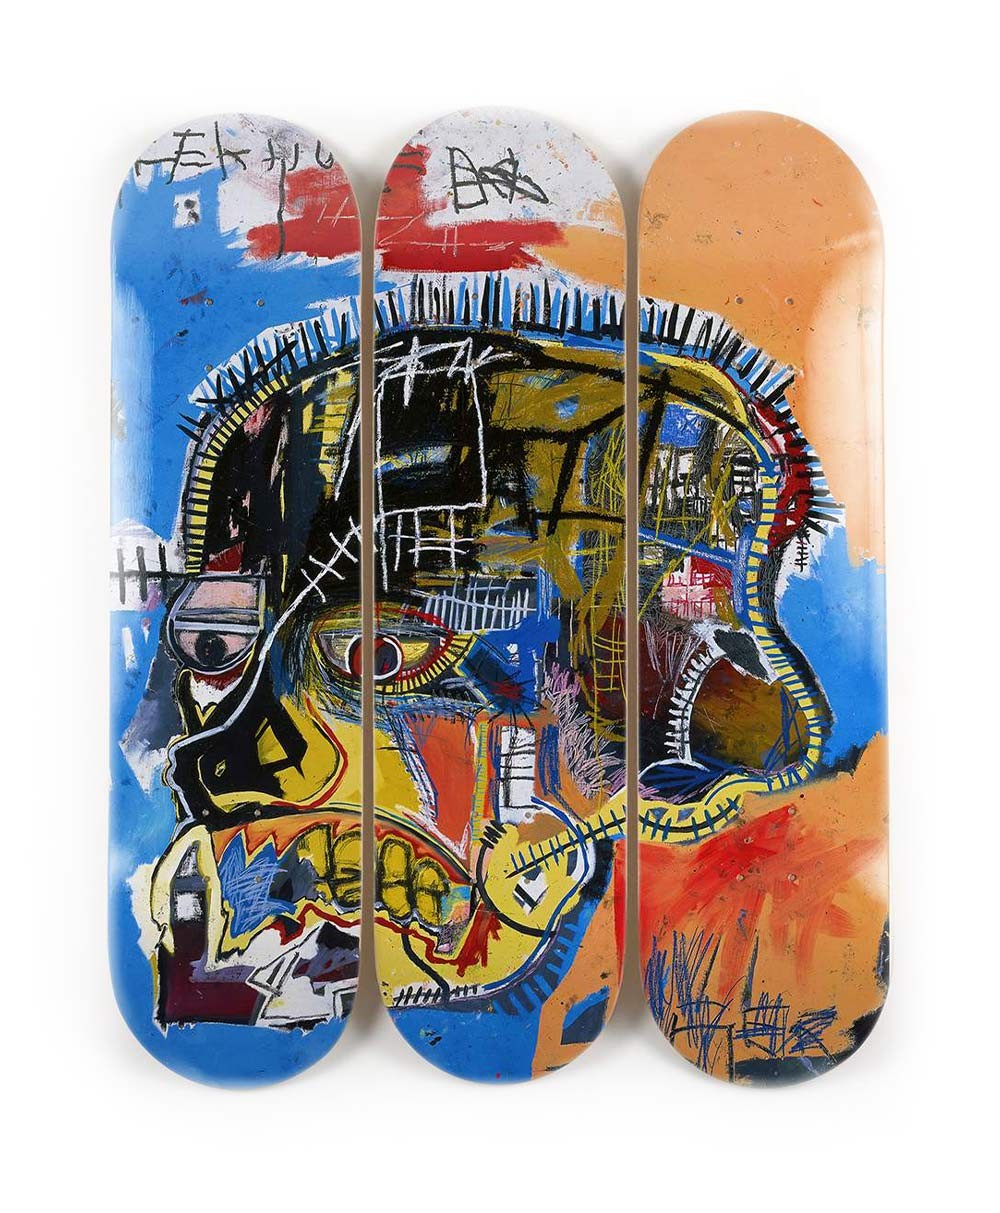 Produktbild "Skull" designed by Jean-Michel Basquiat von The Skateroom im RAUM Conceptstore